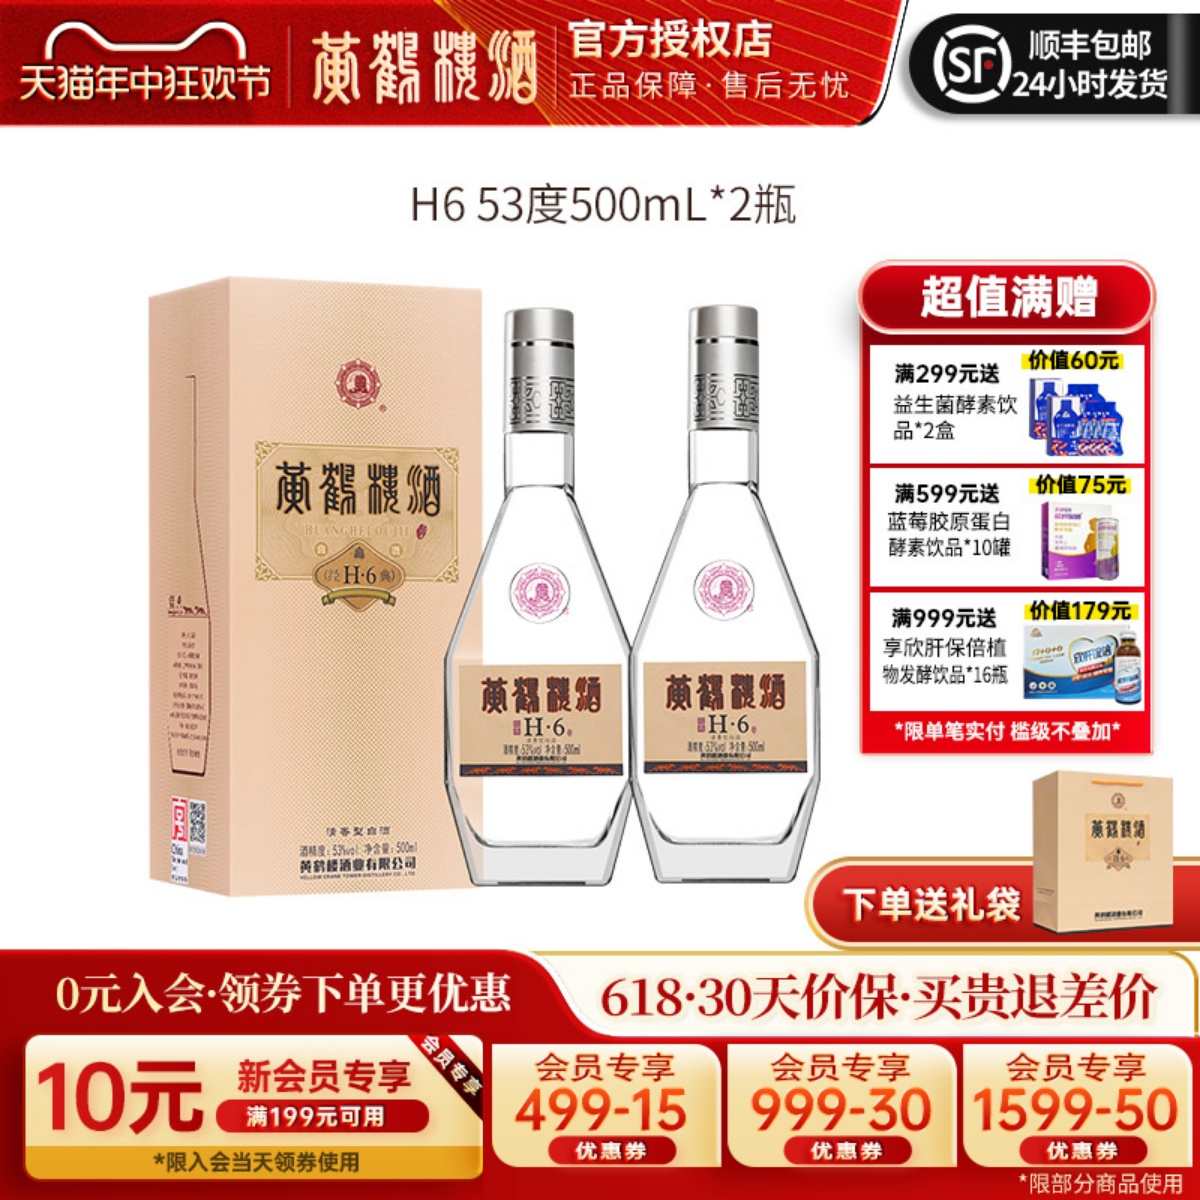 黄鹤楼酒传承经典H6清香型白酒53度500ml2瓶装商务送礼酒水正品